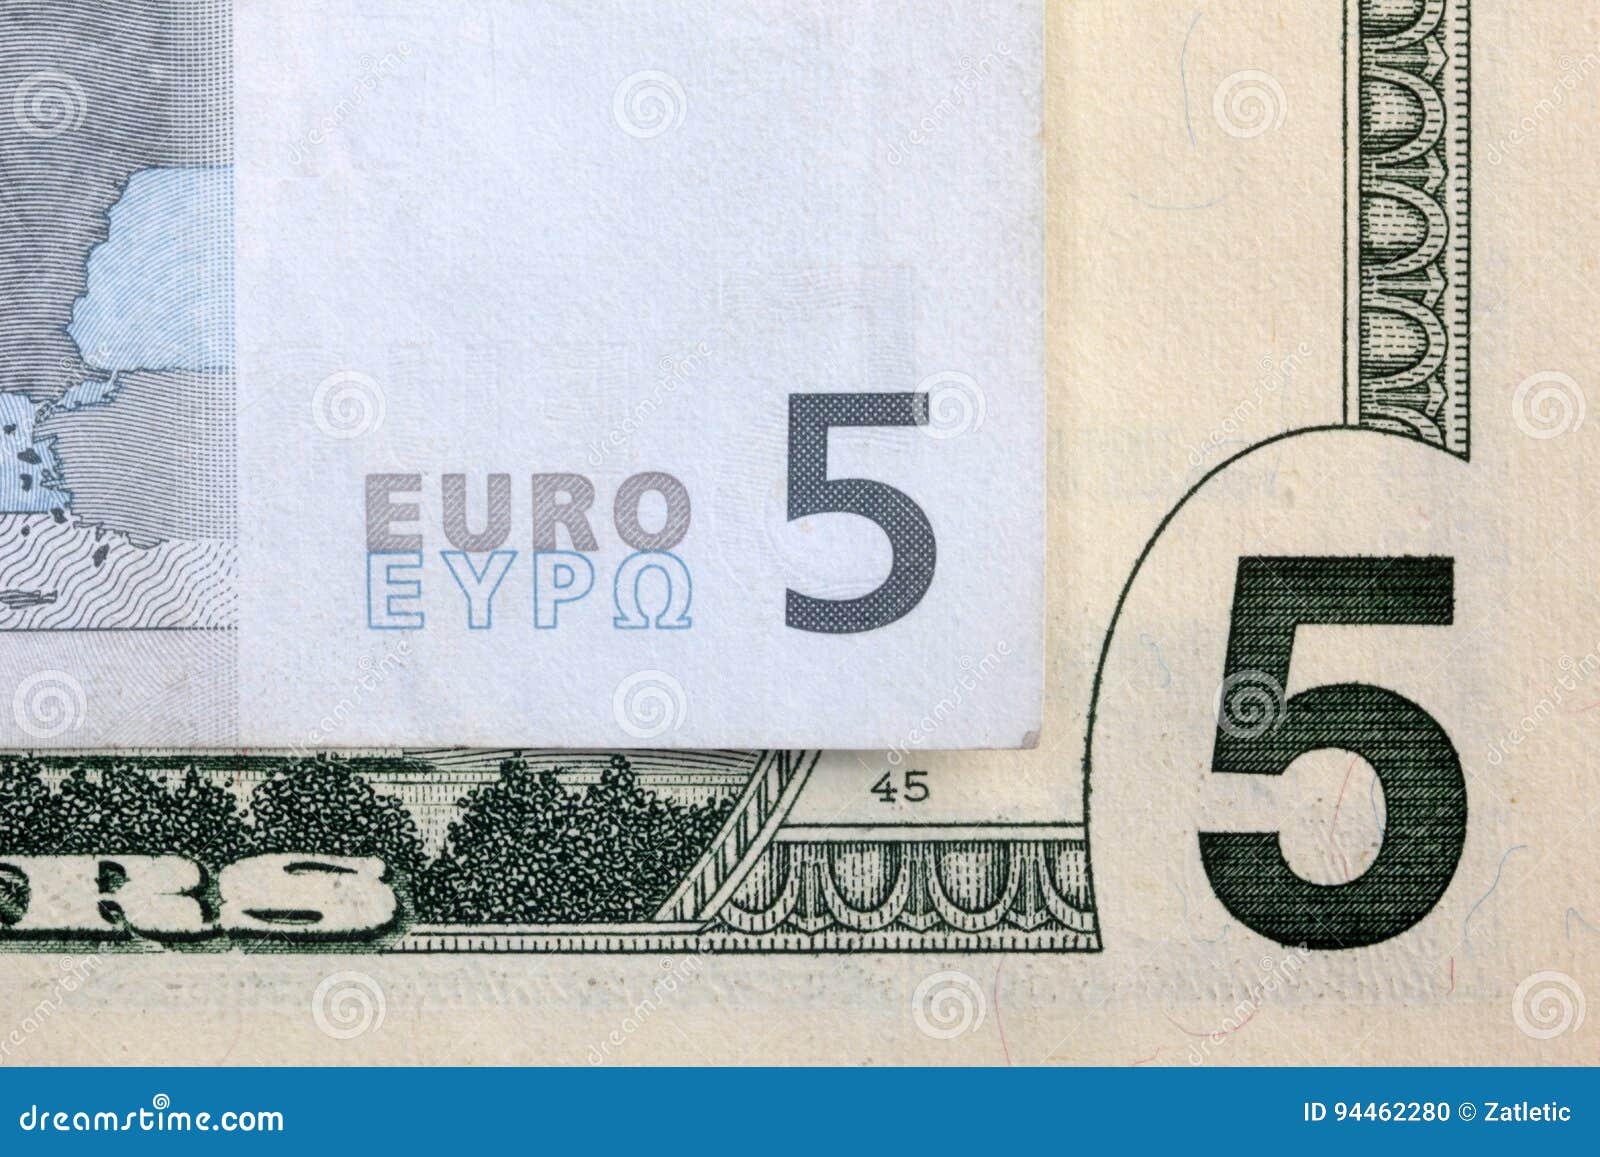 5 евро в долларах. 5 Доллара и 5 евро фото. Что изображено на 5 евро. 5 Евро бумага. Шторы с рисунком евро, доллар.